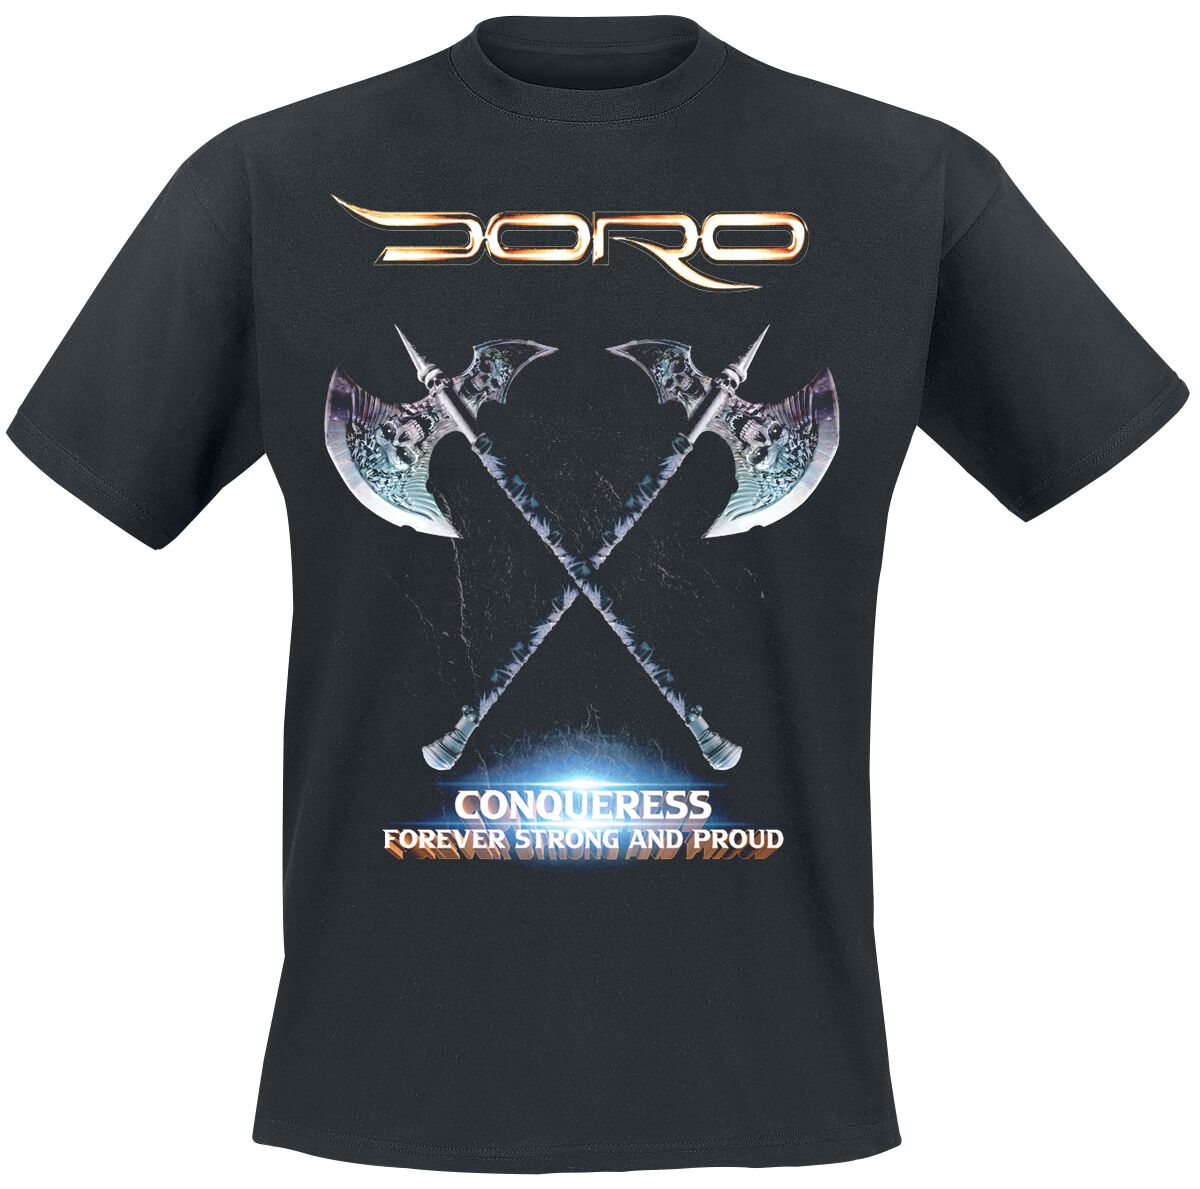 Doro T-Shirt - Conqueress - Forever Strong And Proud - S - für Männer - Größe S - schwarz  - Lizenziertes Merchandise!